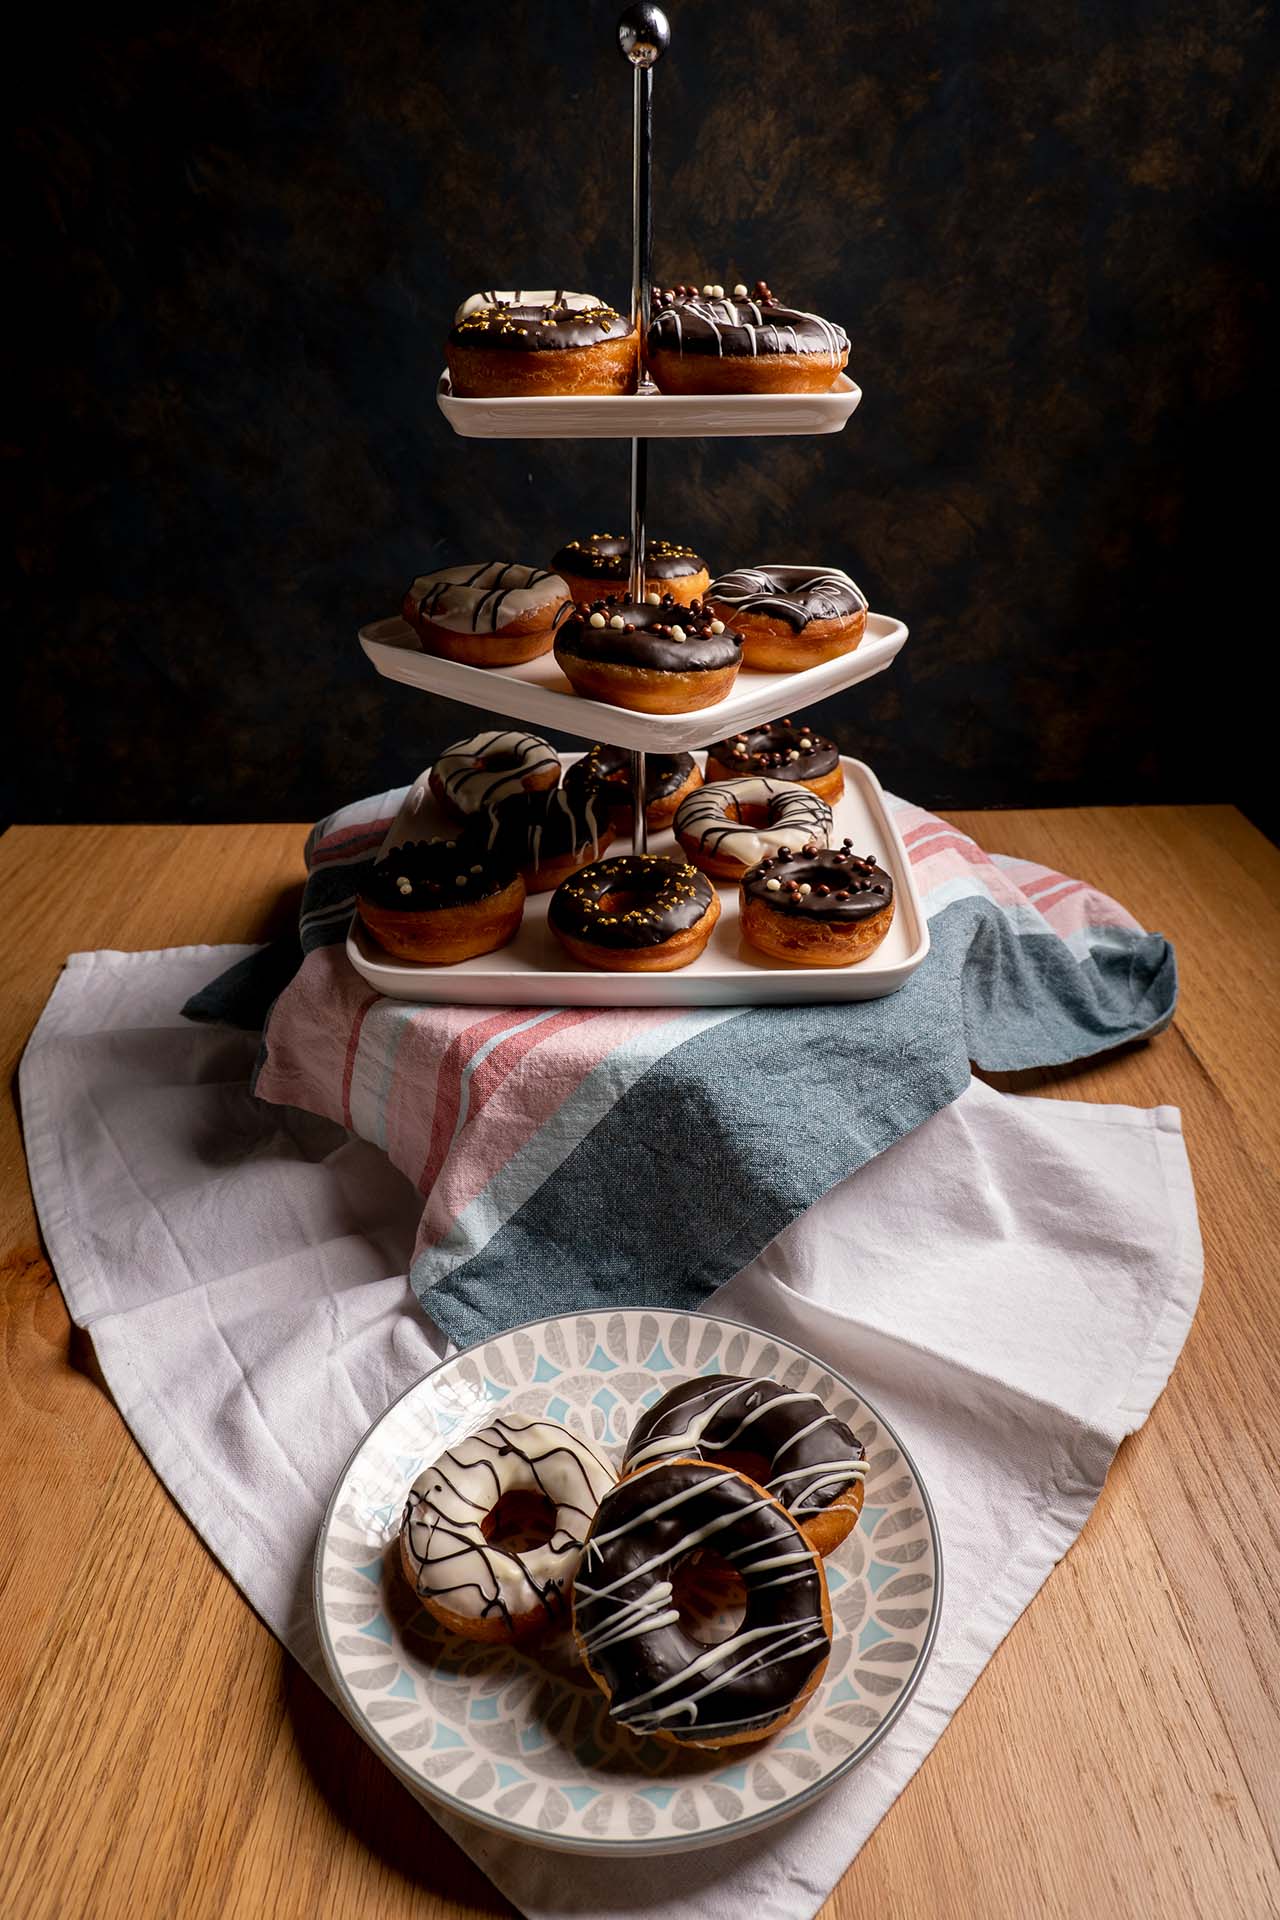 Chocolate Glazed Donuts (Baked Donuts) - Baran Bakery